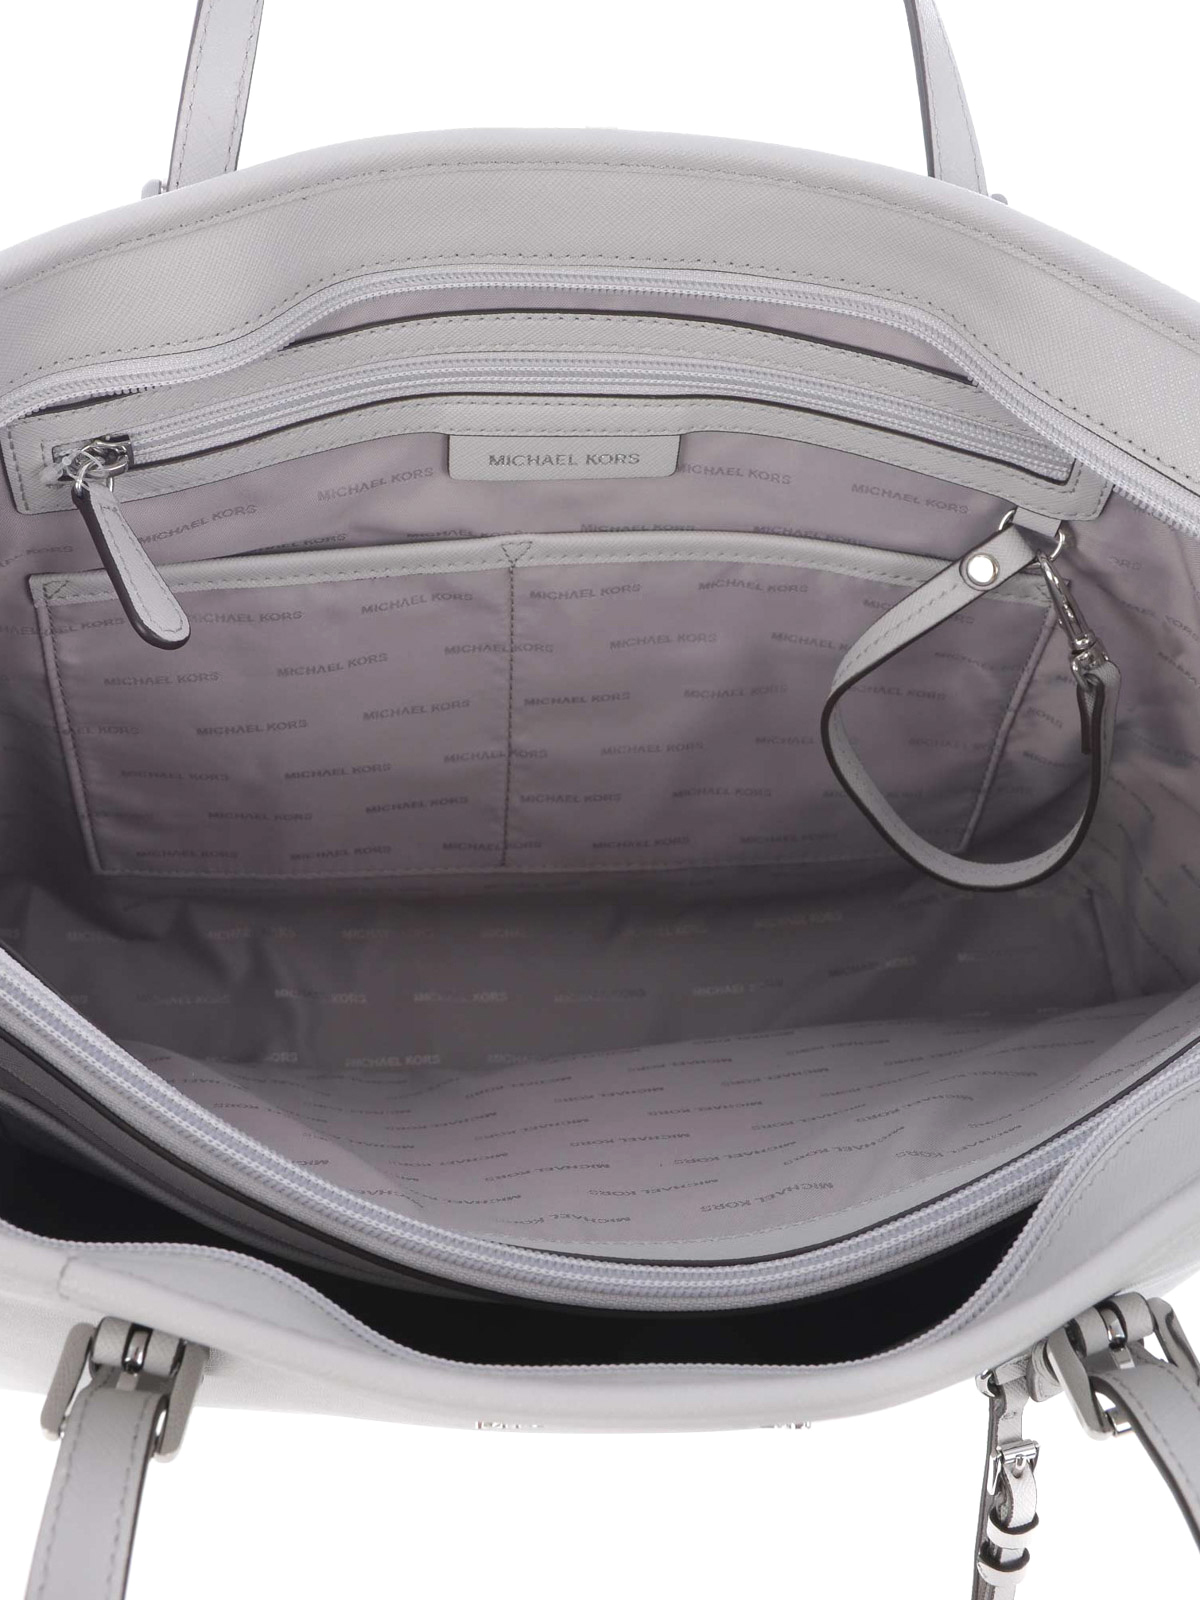 Totes bags Michael Kors - Jet Set Travel medium pearl tote